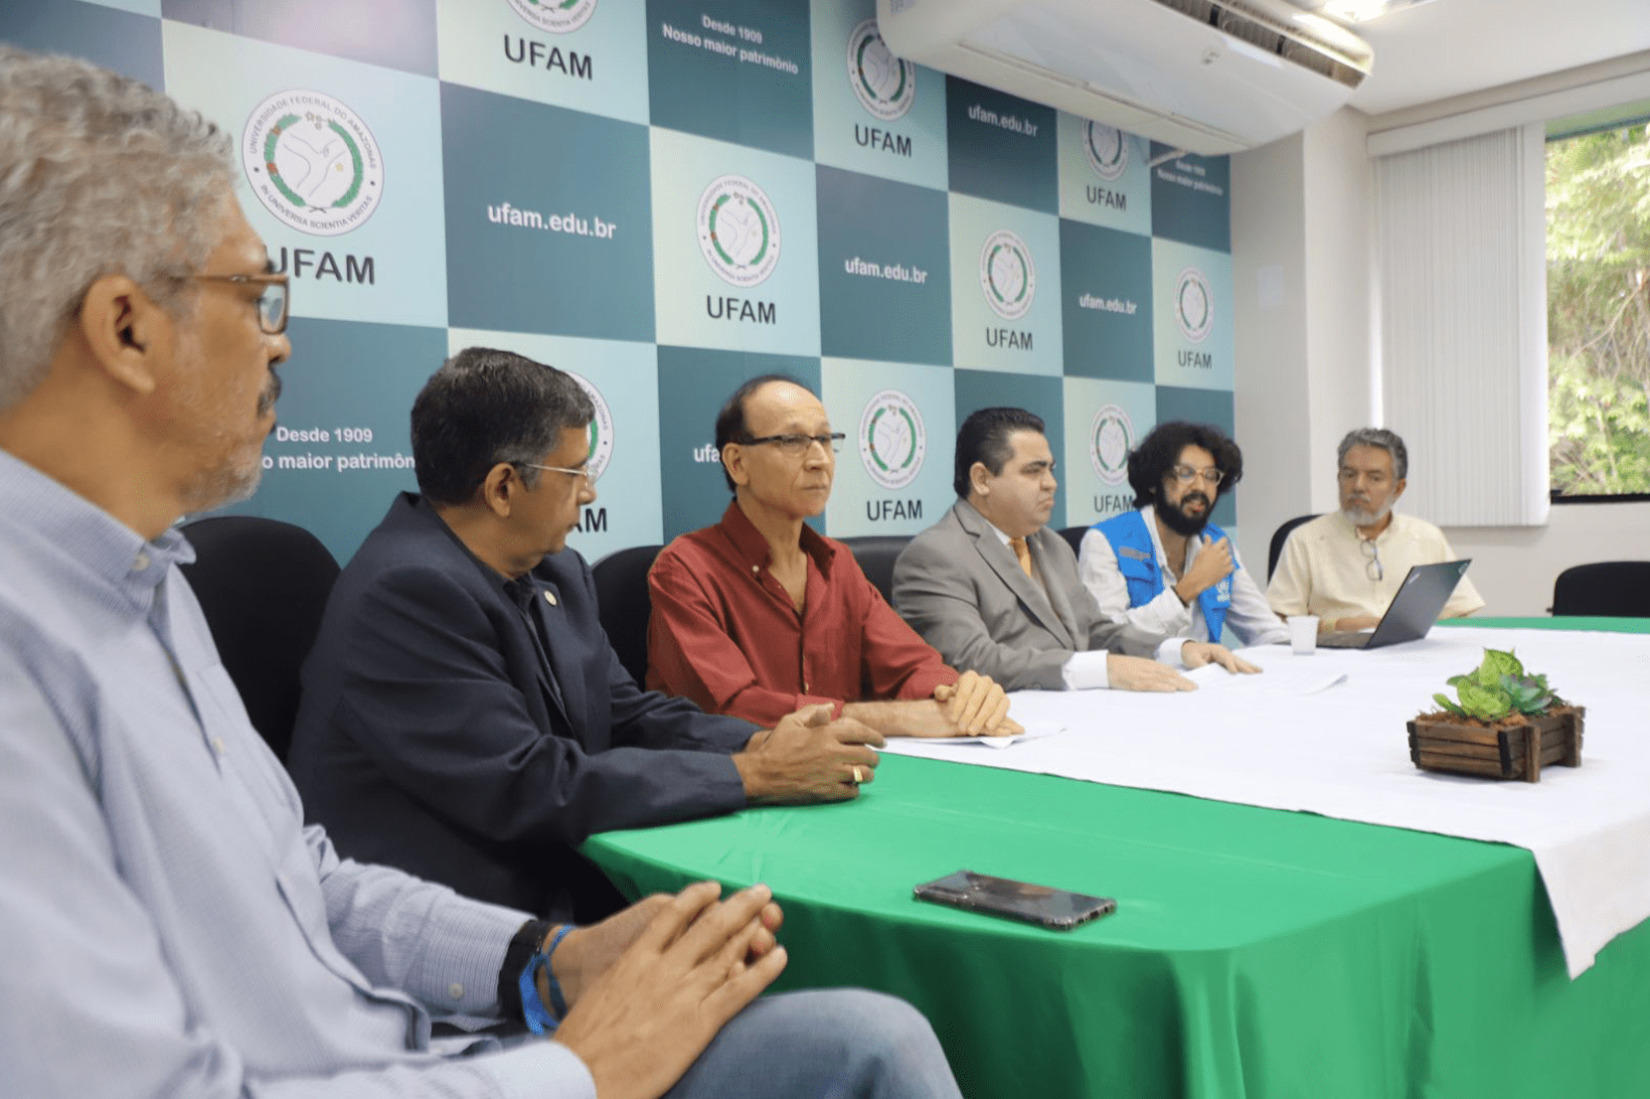 Anúncio de adesão à Cátedra Sérgio Vieira de Mello na Universidade Federal do Amazonas (UFAM).